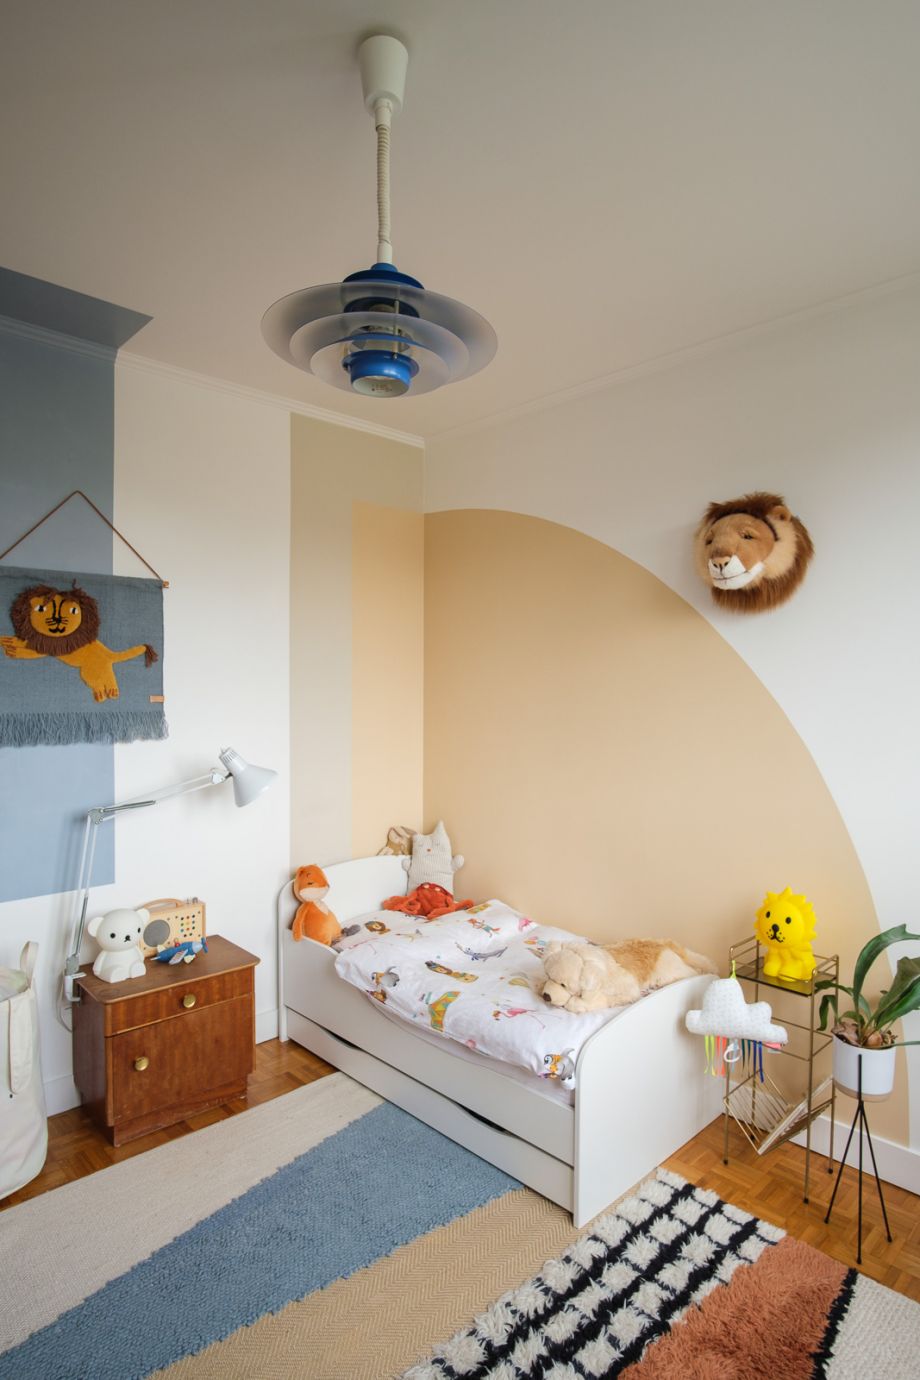 Rénovation complète d’un appartement par Léa Muller et photographiée par Romain Baltz